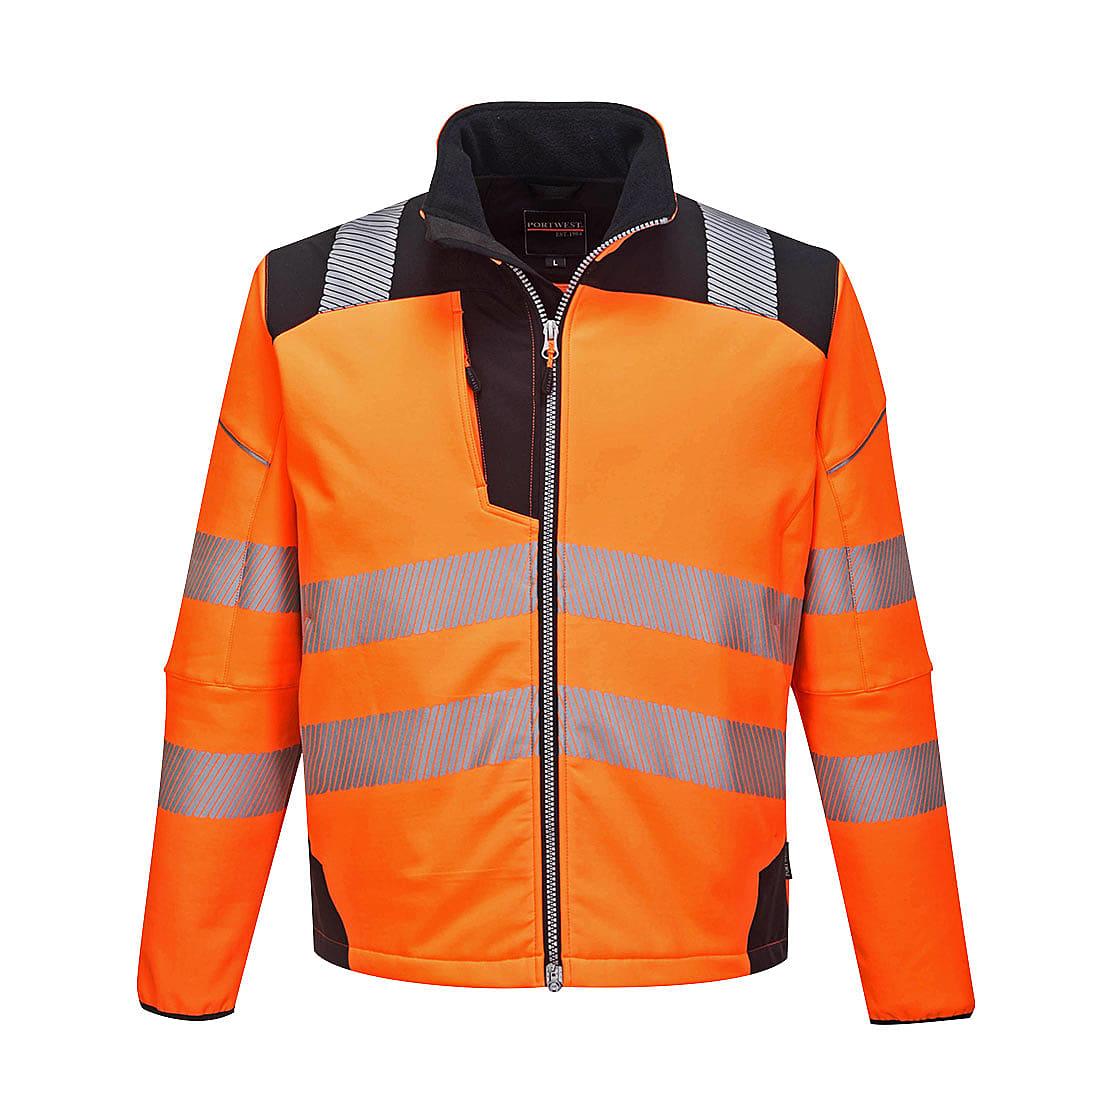 Portwest PW3 Hi-Viz Softshell Jacket in Orange / Black (Product Code: T402)